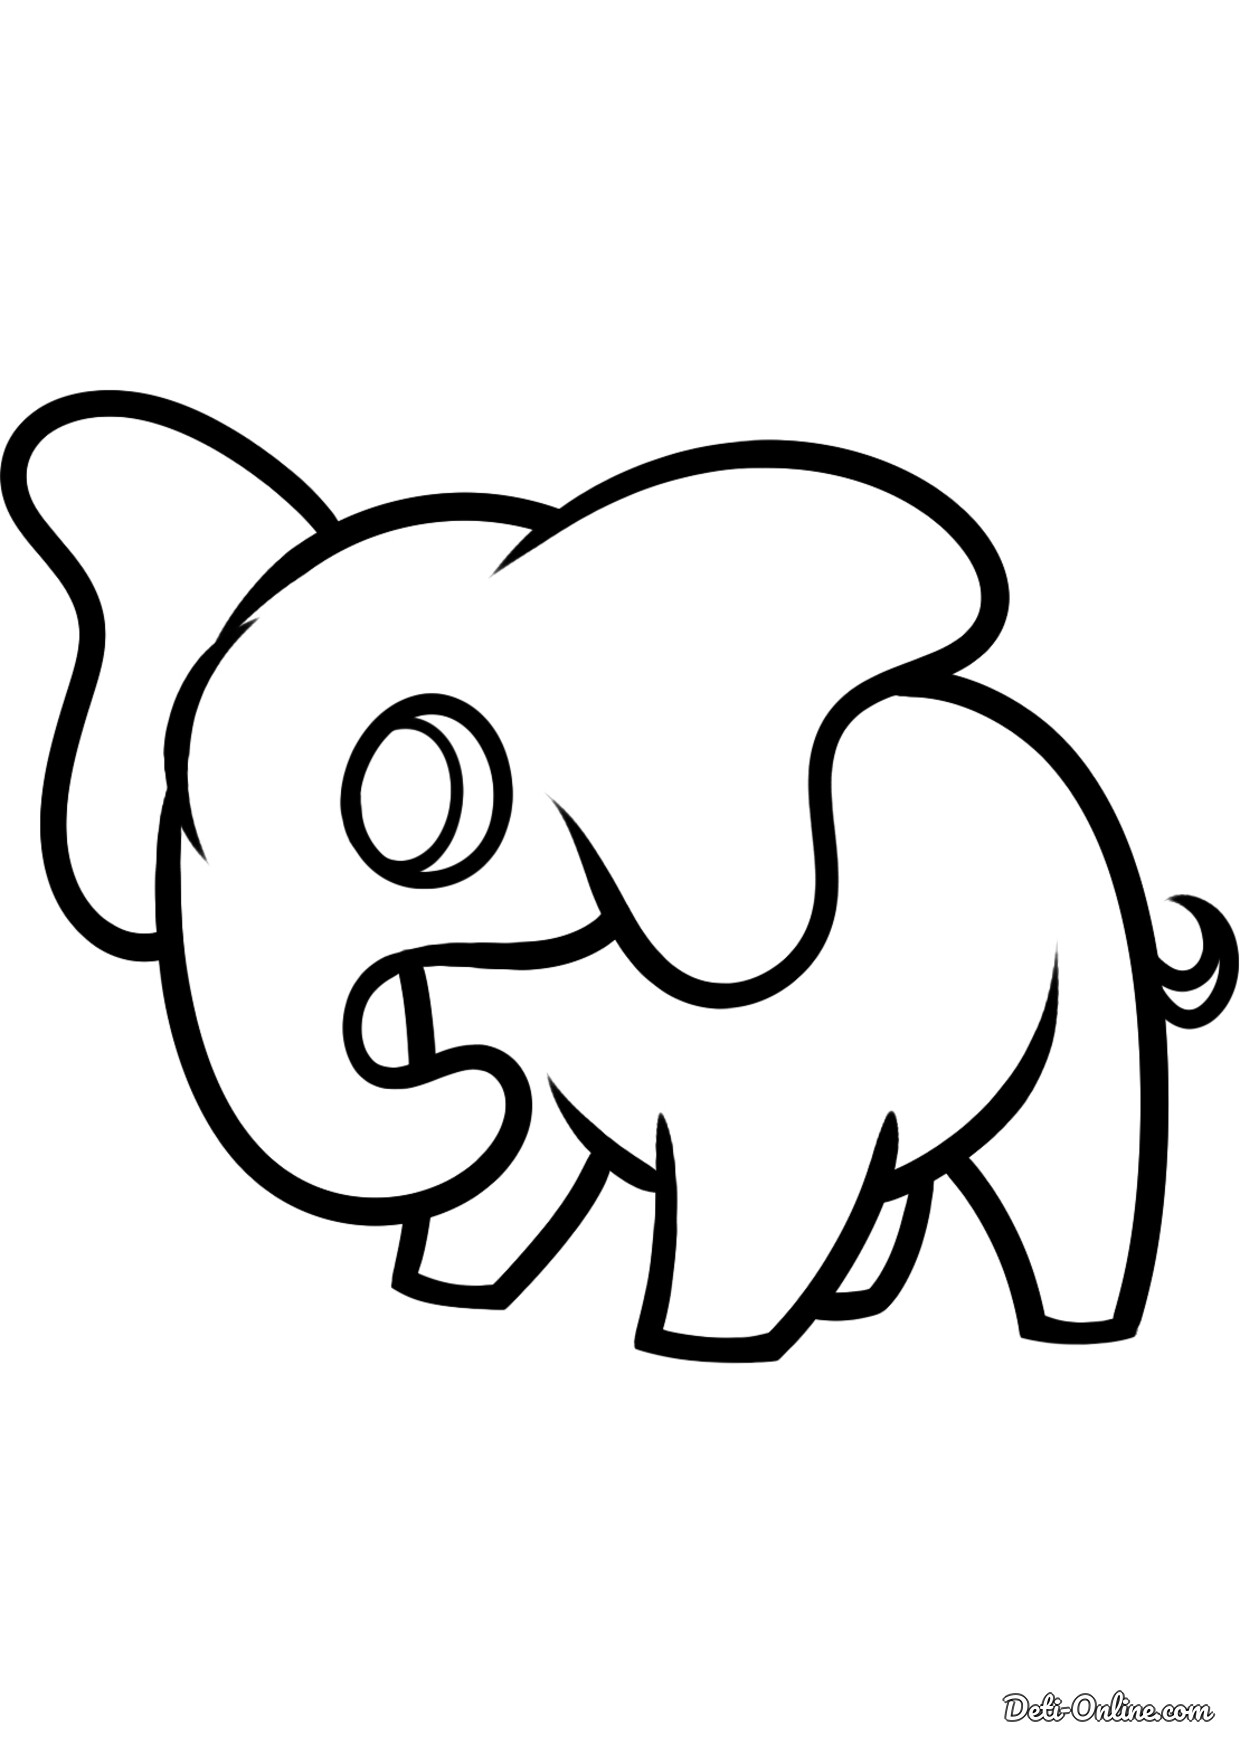 Слон картинка для детей раскраска